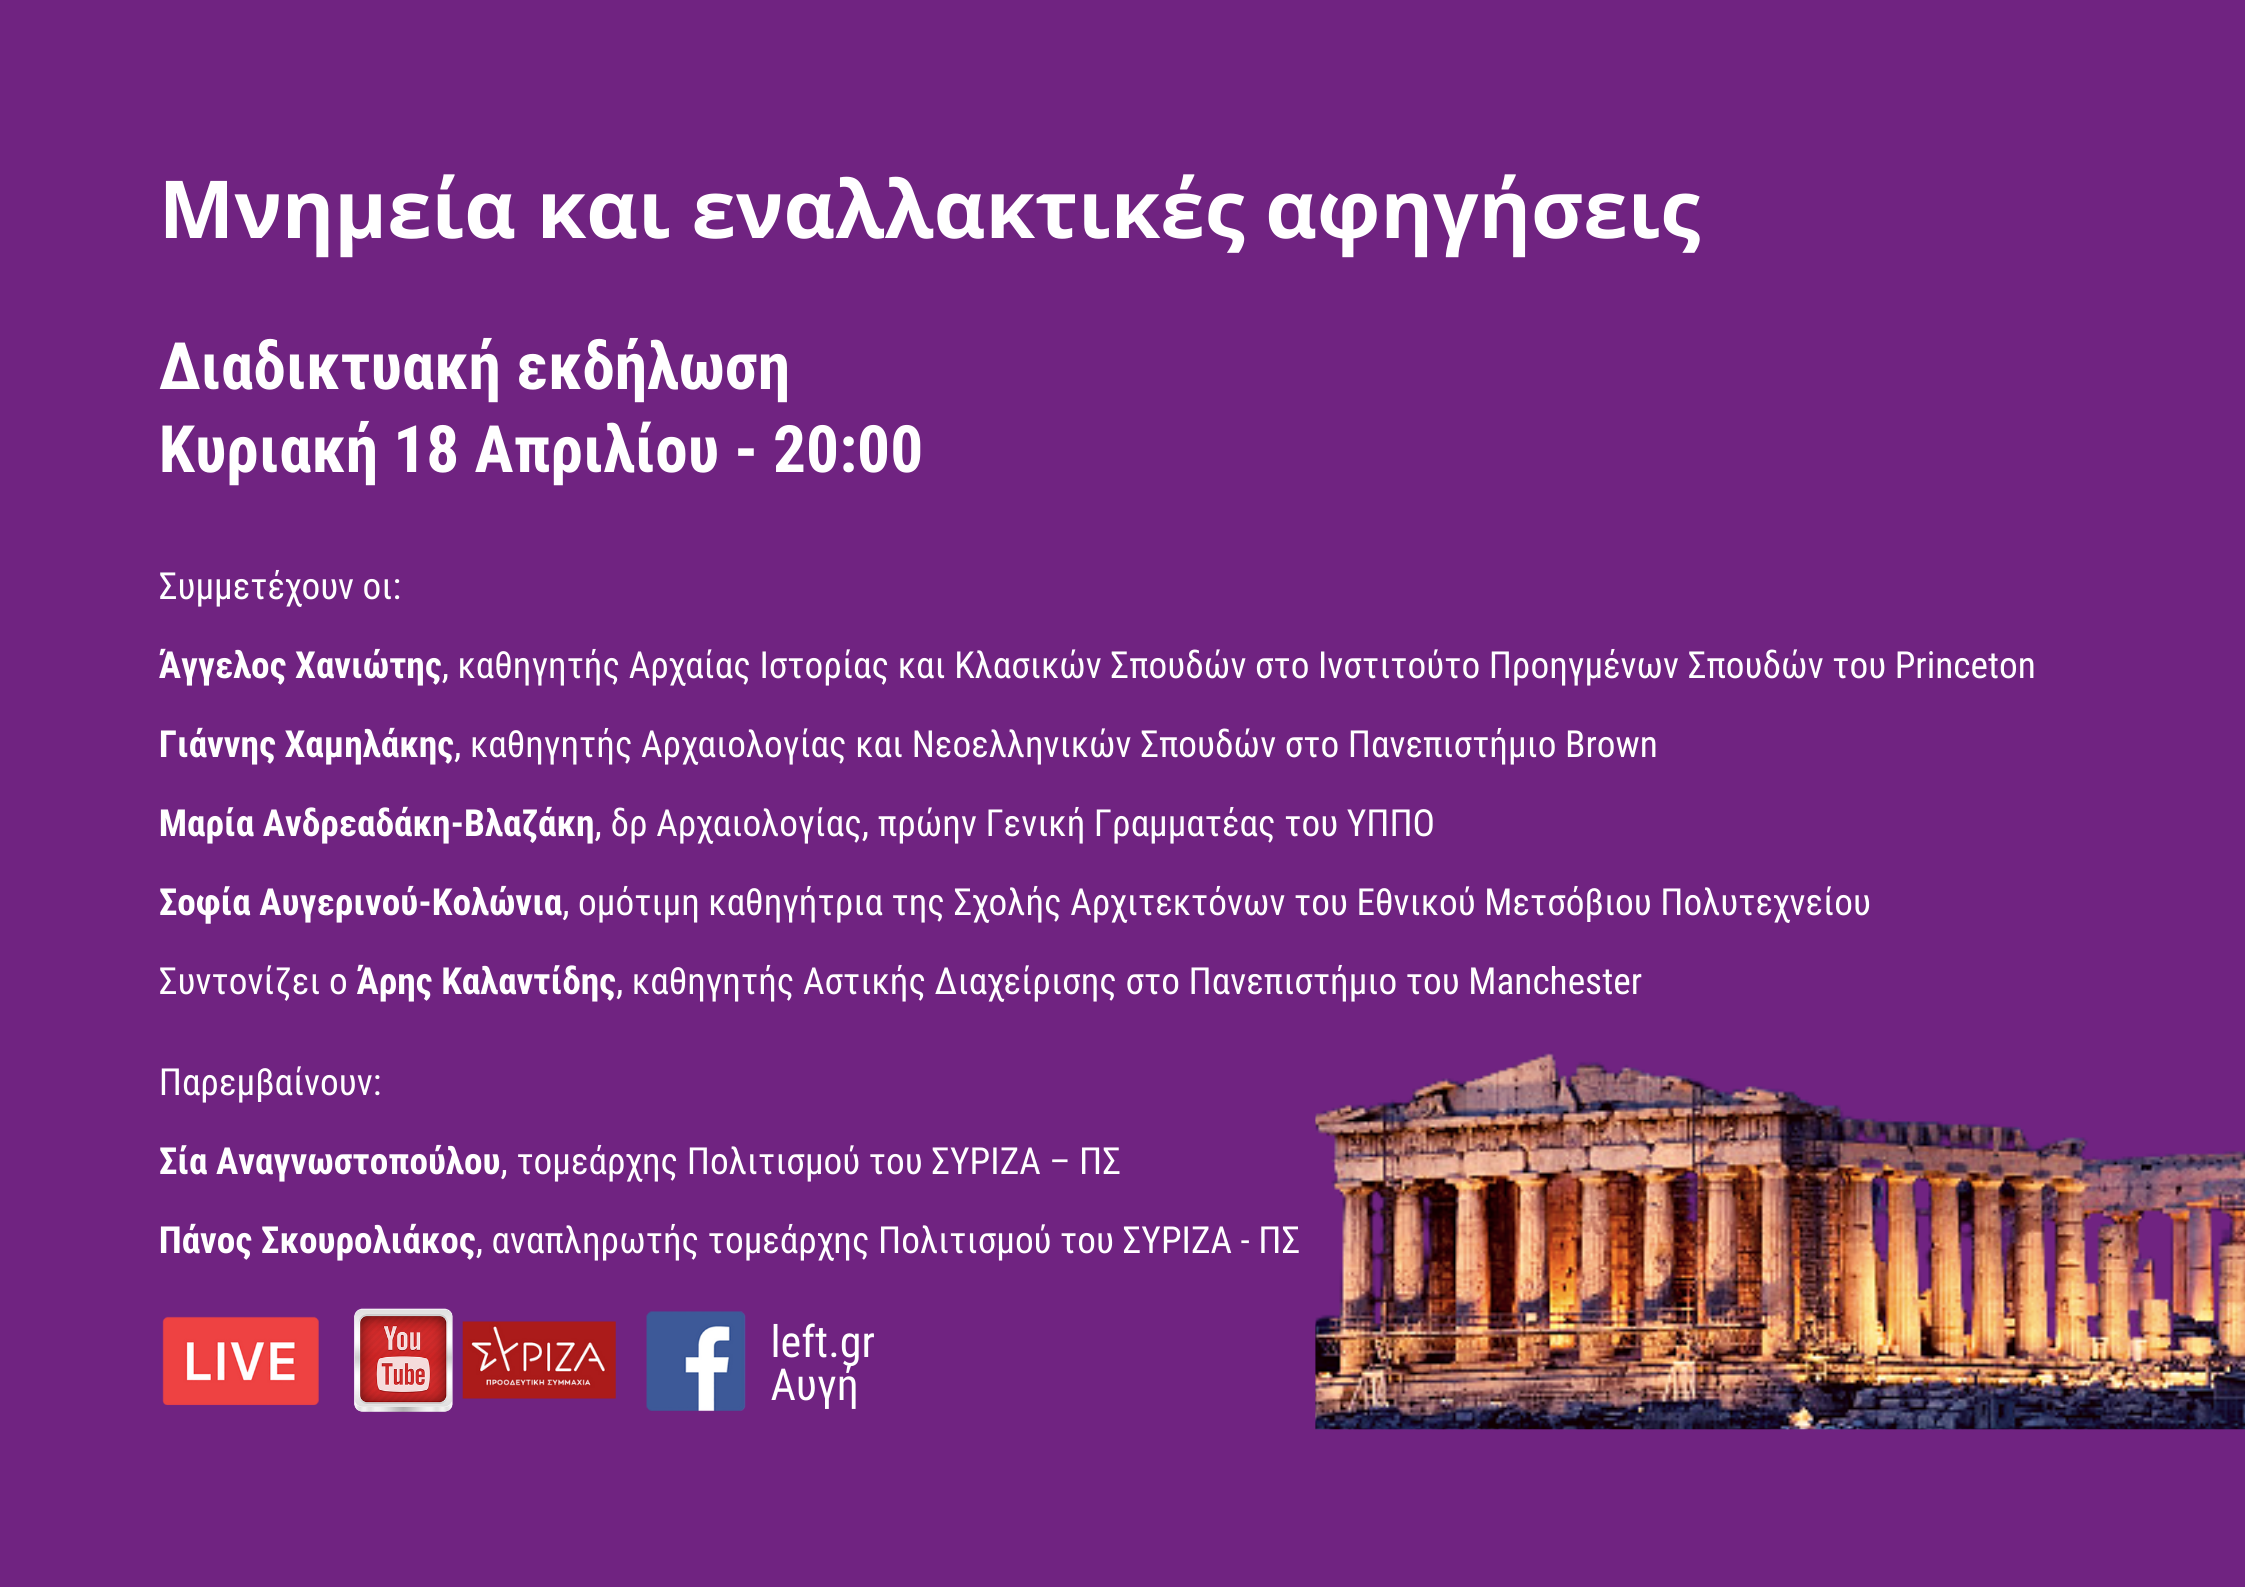 «Μνημεία και εναλλακτικές αφηγήσεις»:διαδικτυακή εκδήλωση του ΣΥΡΙΖΑ – ΠΣ για την Παγκόσμια Ημέρα Μνημείων - Κυριακή 18 Απριλίου